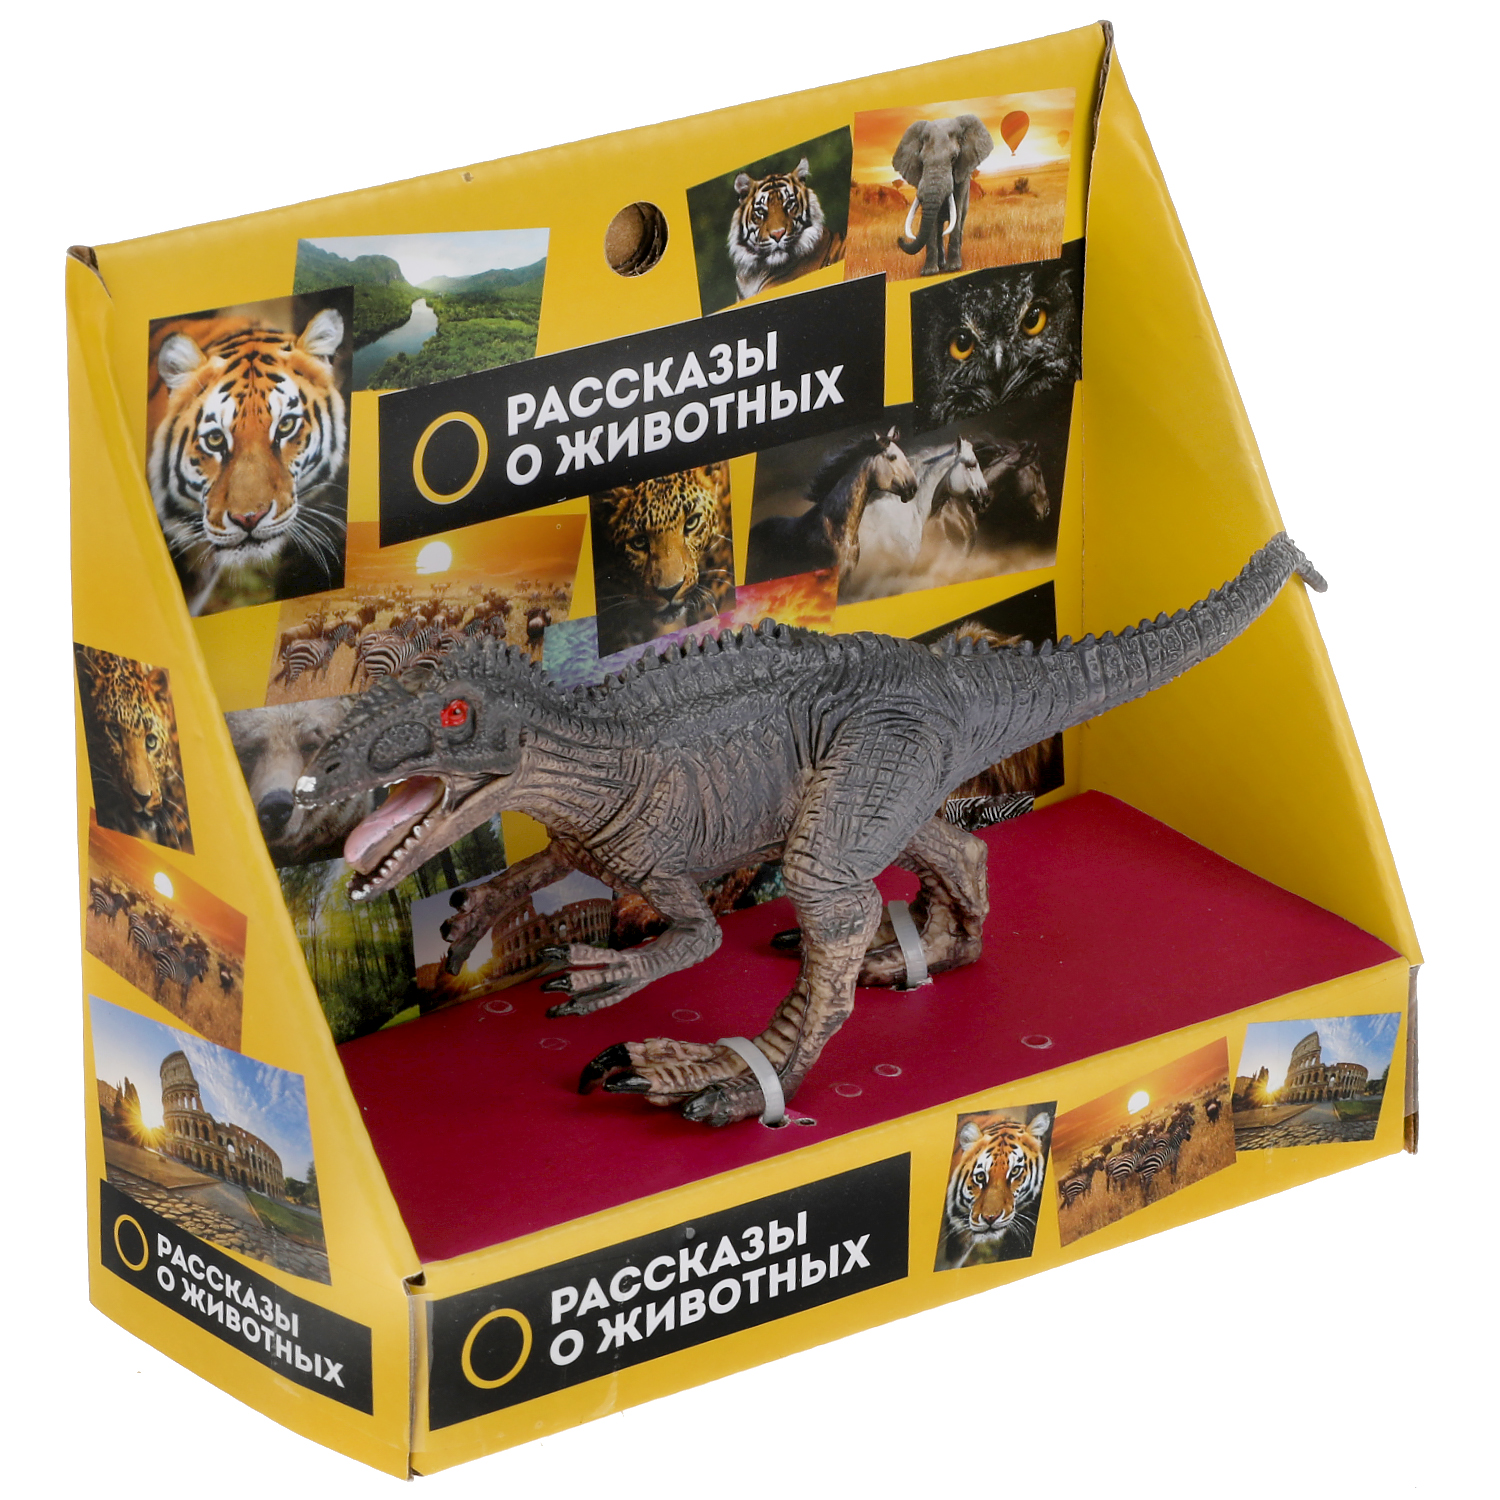 Фигурка Играем вместе Динозавр цератозавр 306108 - фото 6